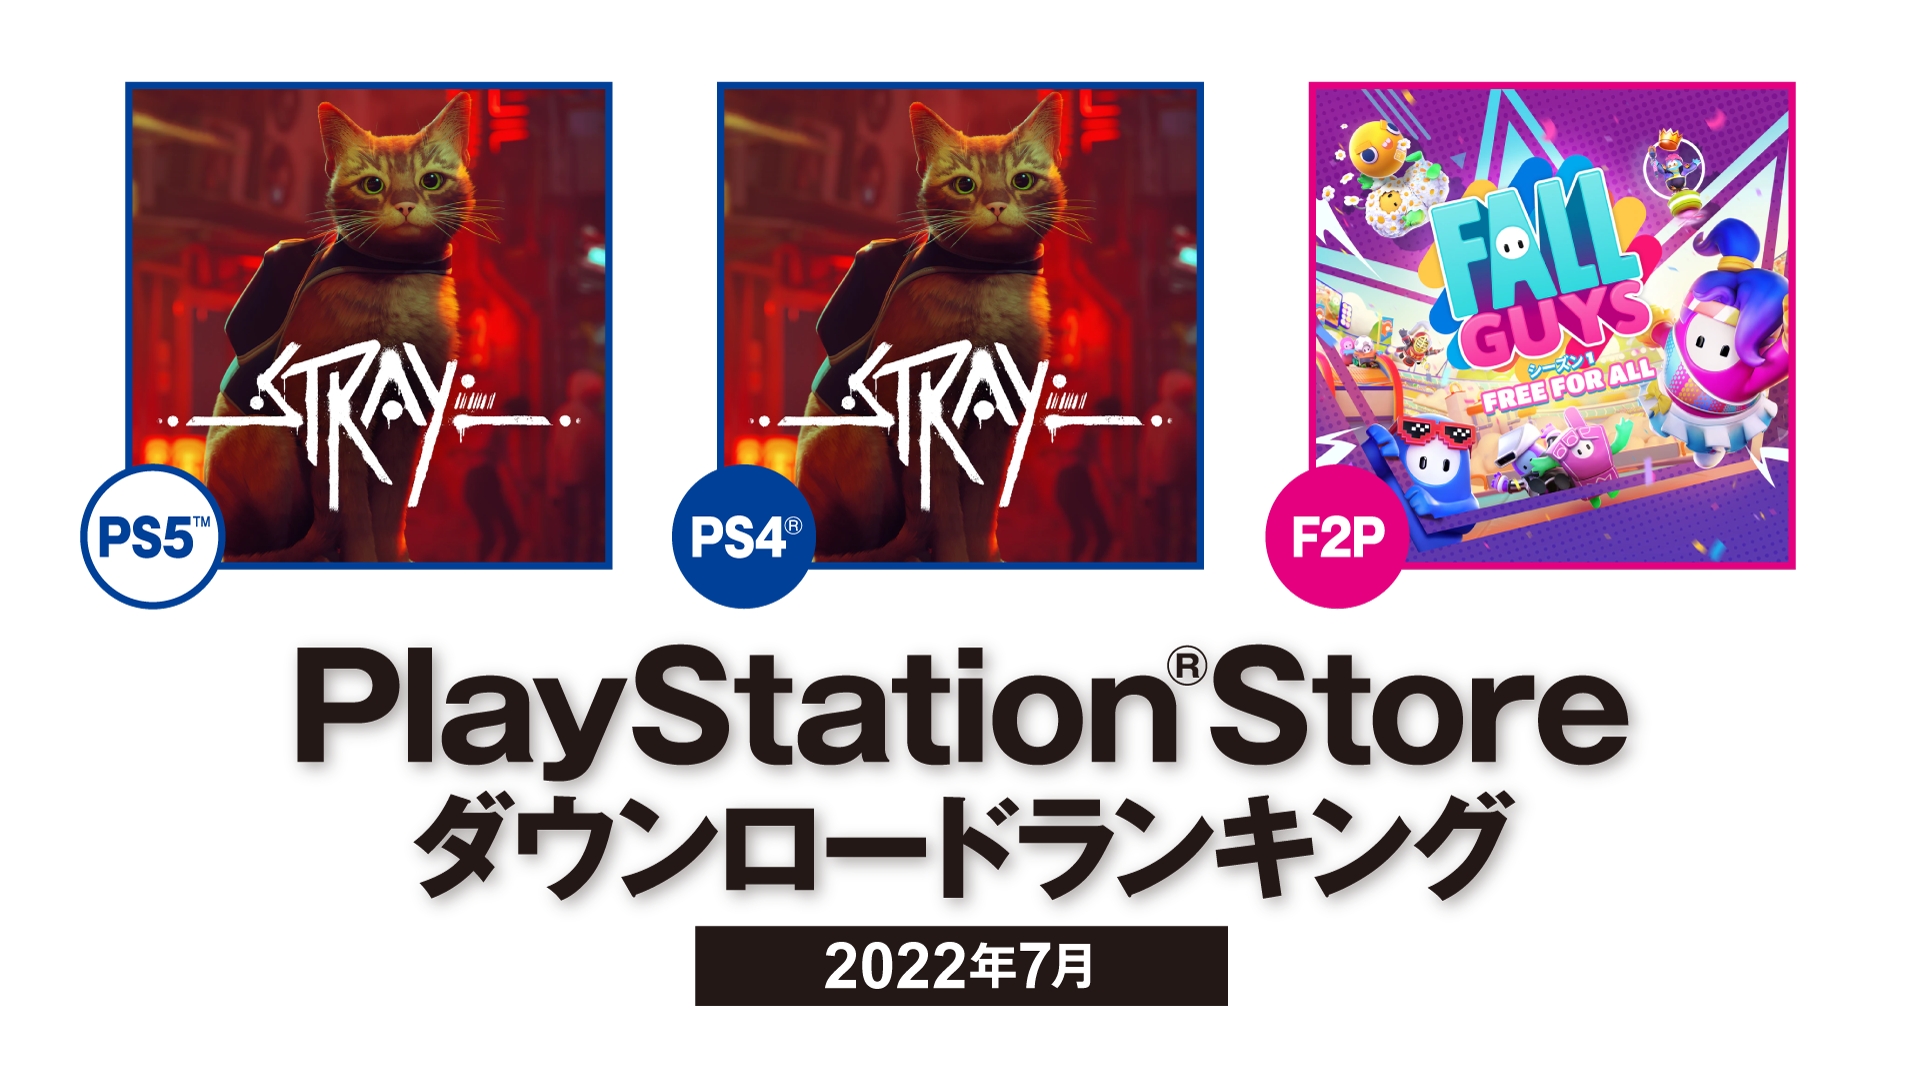 猫ゲー Stray がps5 Ps4ともに初登場1位 Ps Store 7月のダウンロードランキングを公開 Game Watch